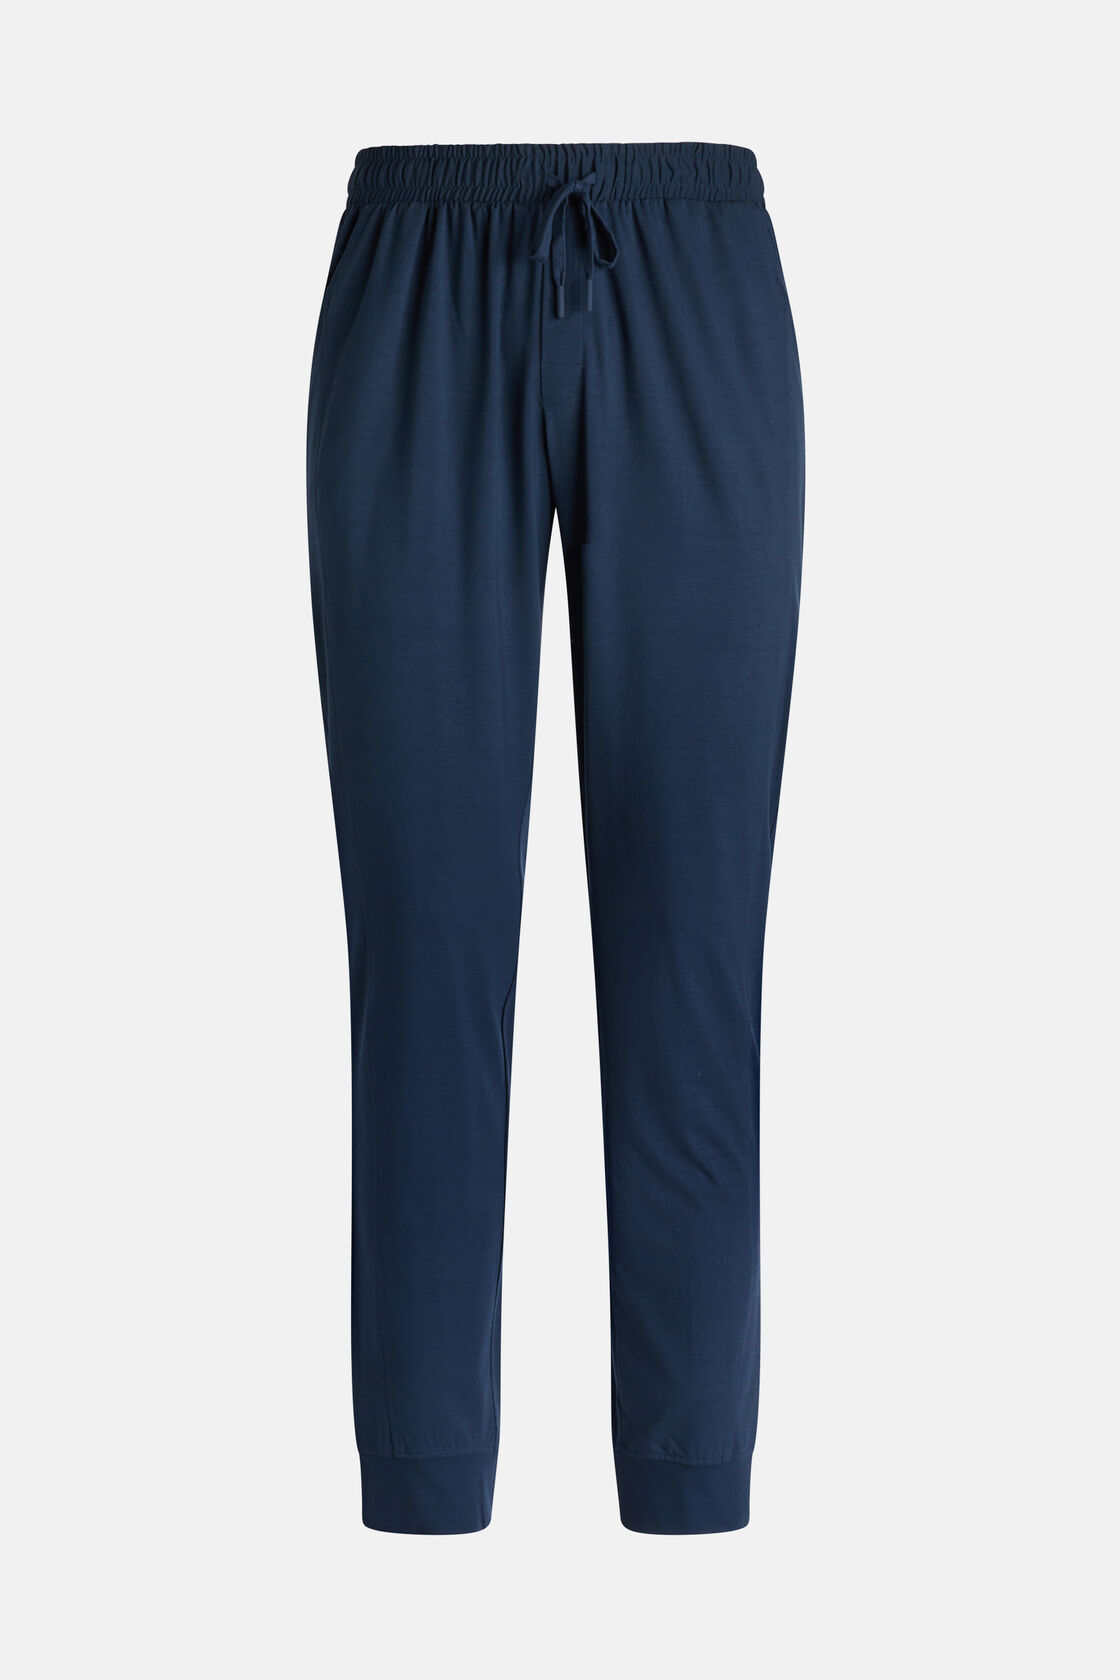 Calças de Pijama de Mistura Viscose, Navy blue, hi-res